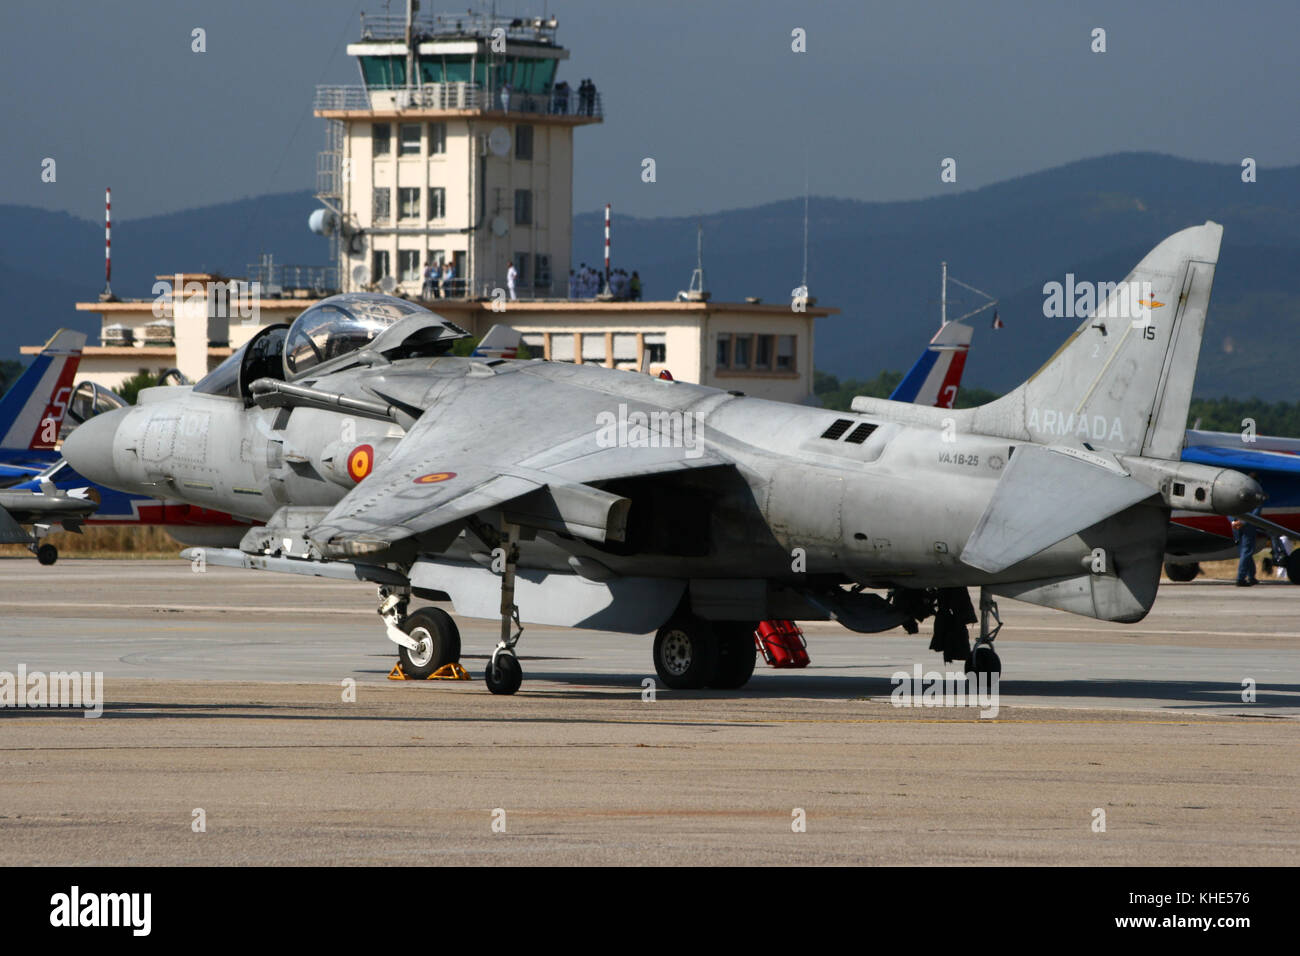 HYÈRES, FRANCE - JUIN 13 : Marine espagnole AV-8B le jet de saut Harrier sur le tarmac au large de la base aérienne d'Hyères. Banque D'Images